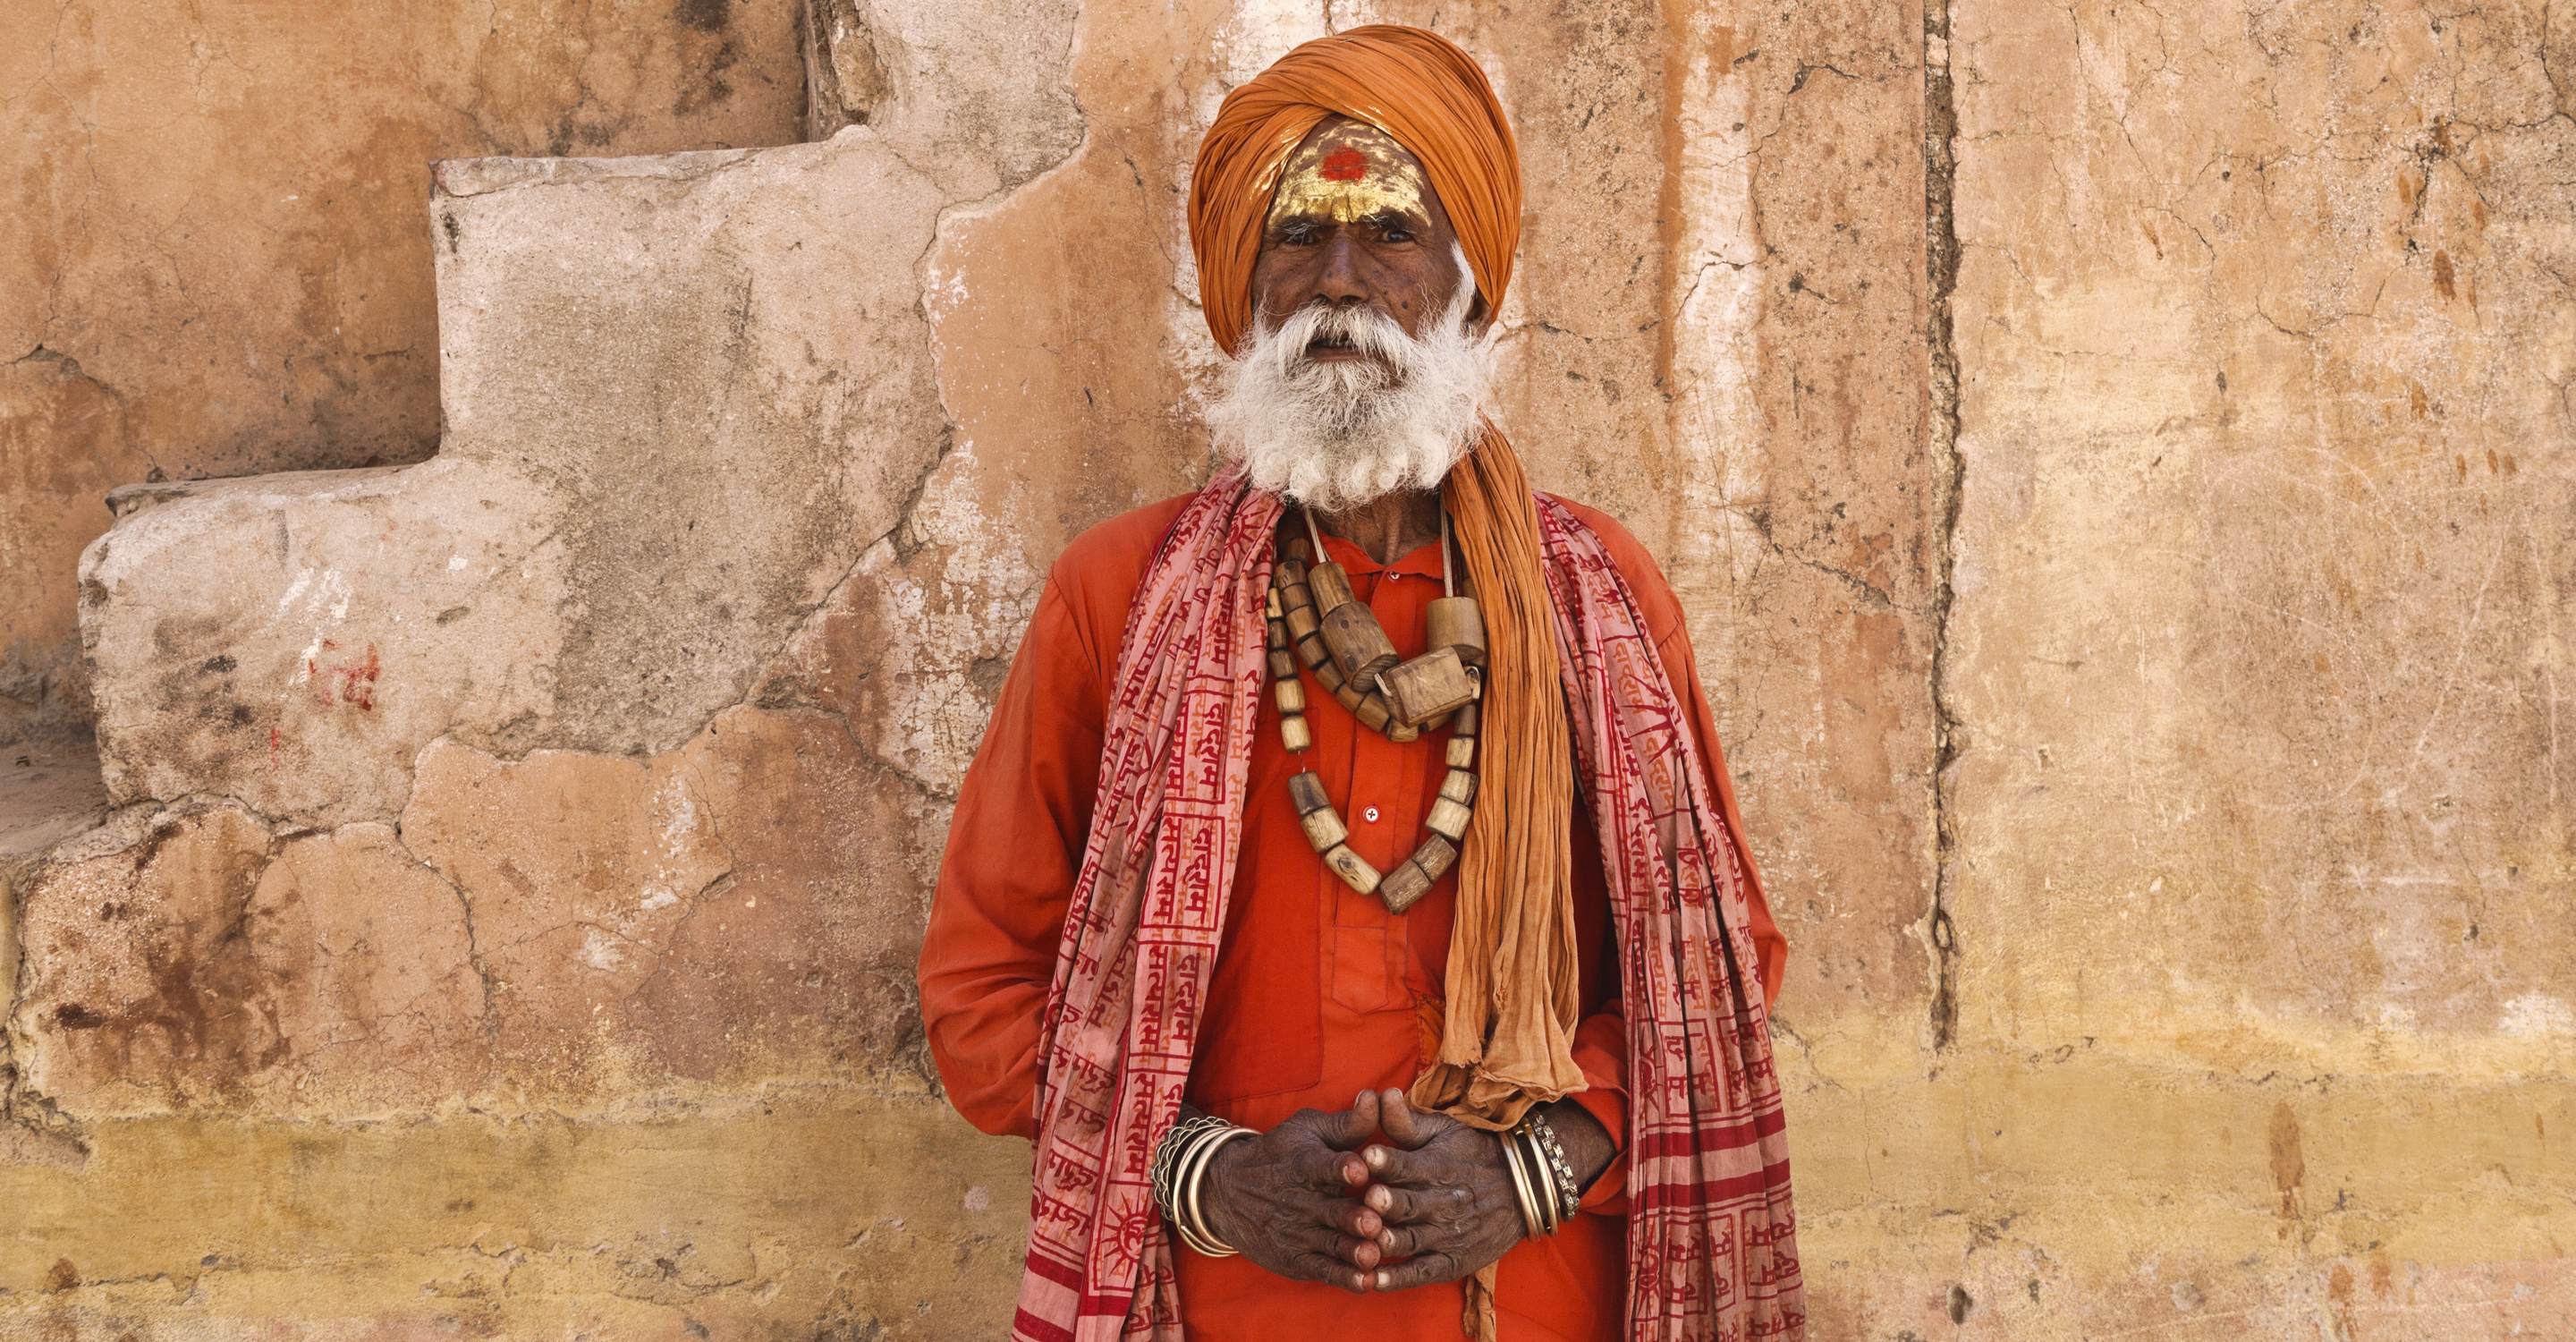 An Indian man poses in Rajasthan, Jaipur, India